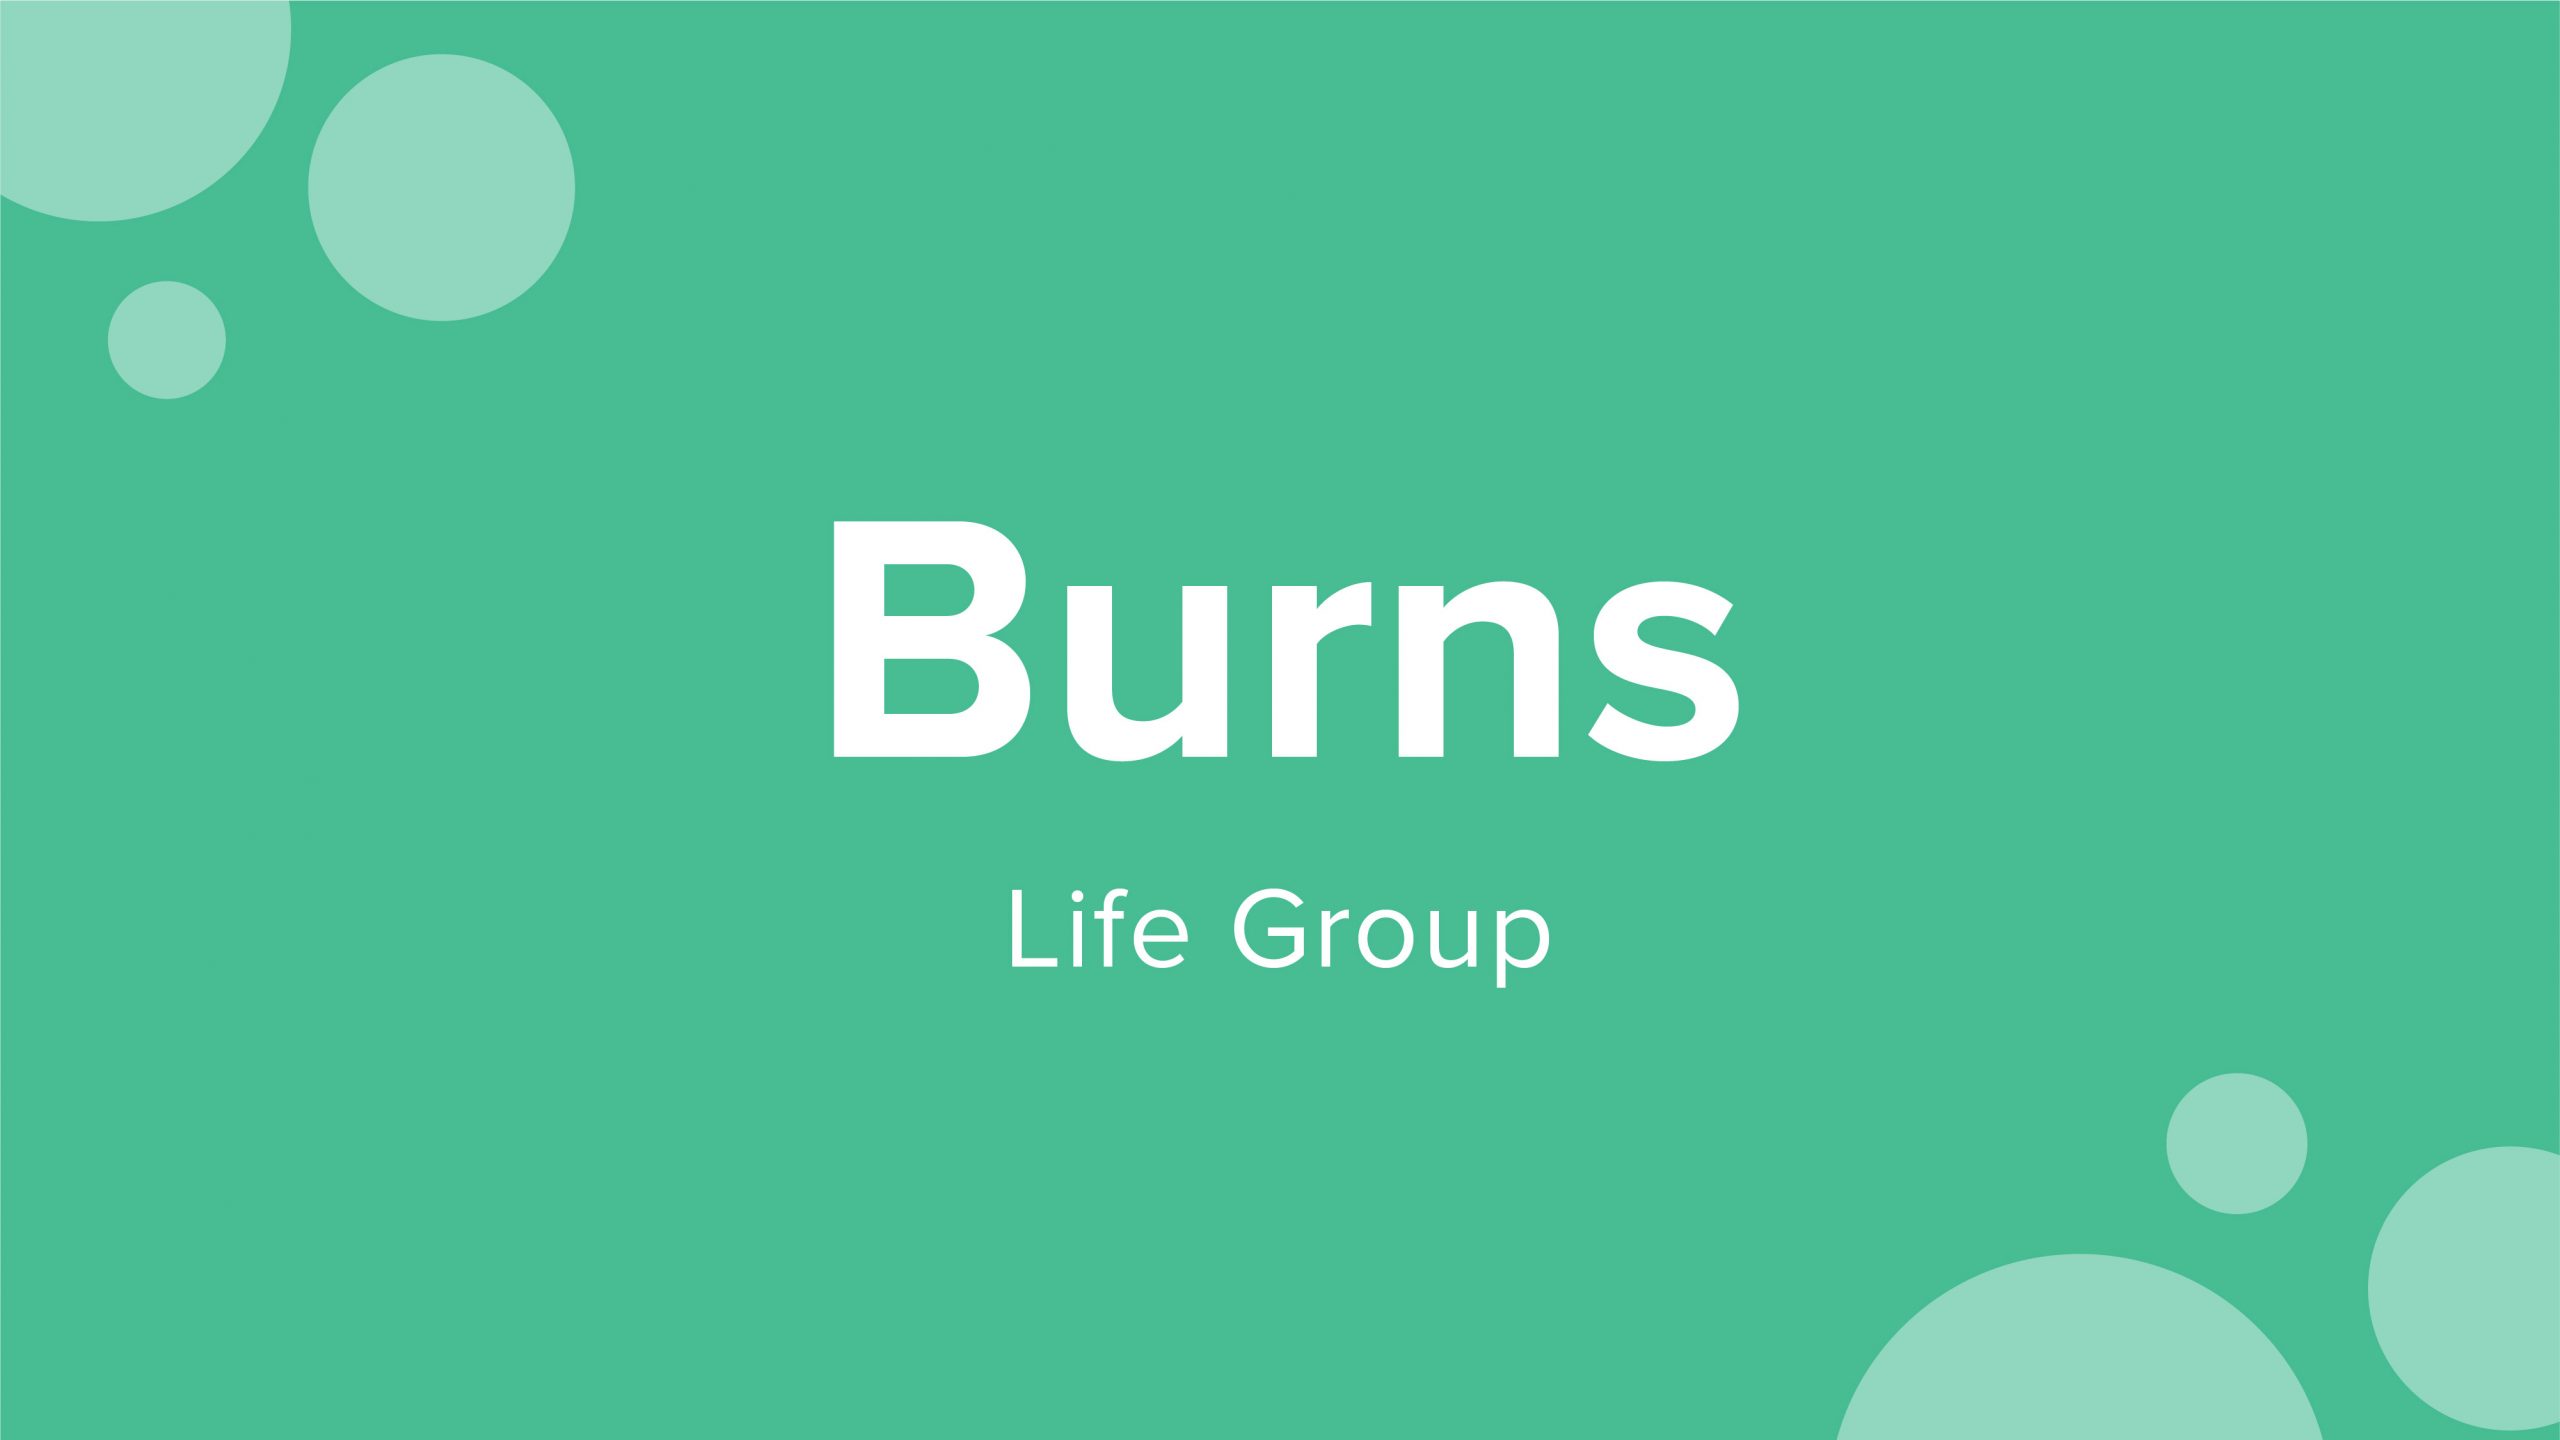 Burns Life Group